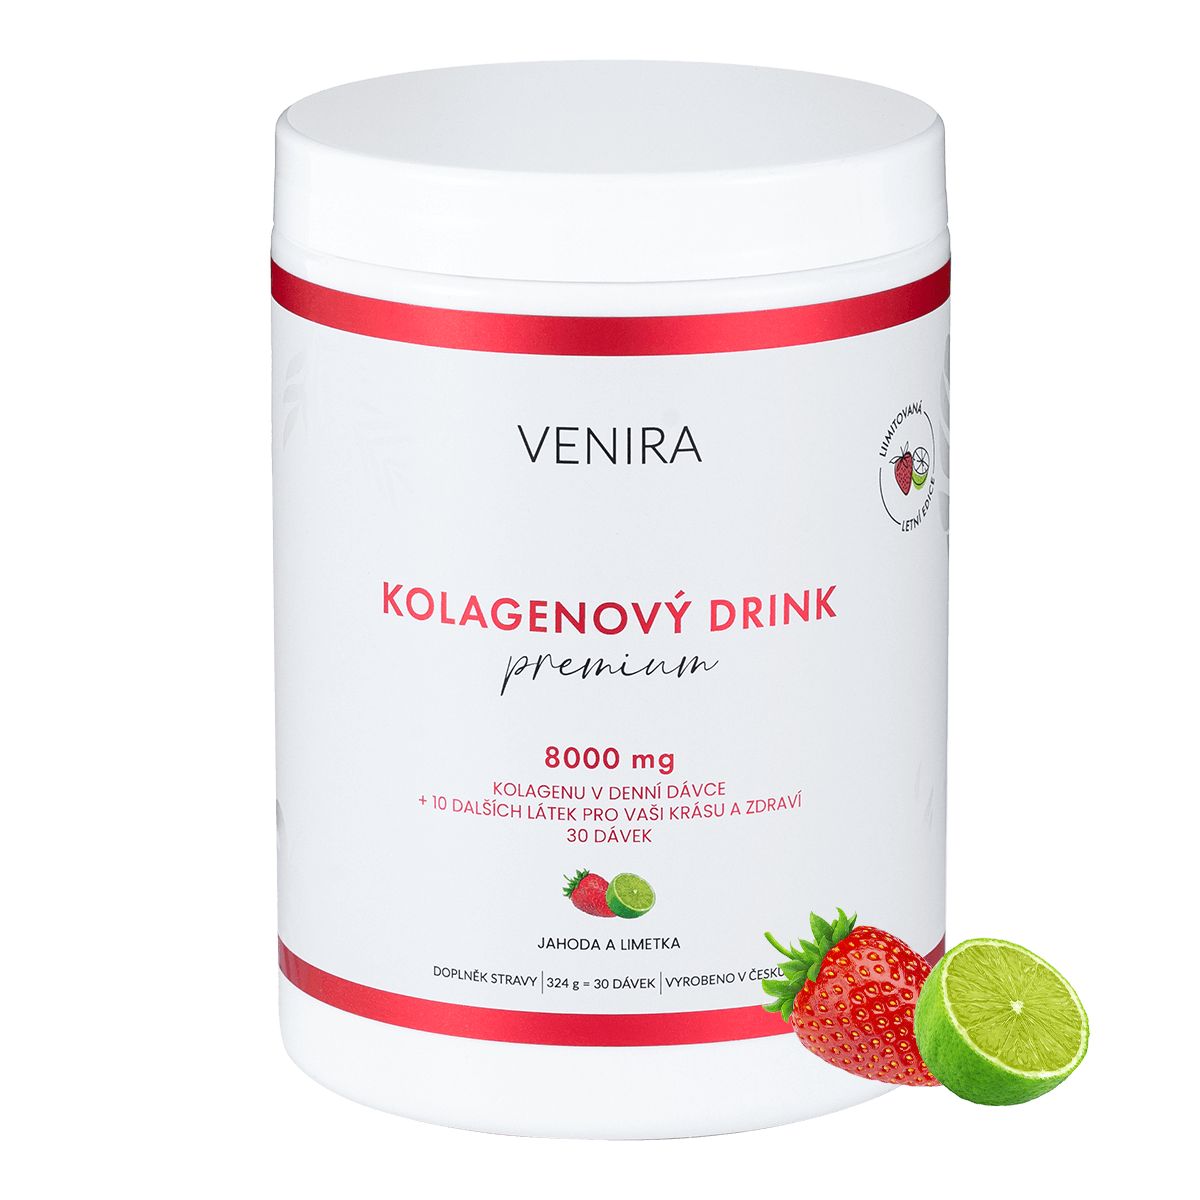 Venira Kolagenový drink Premium jahoda a limetka 324 g Venira